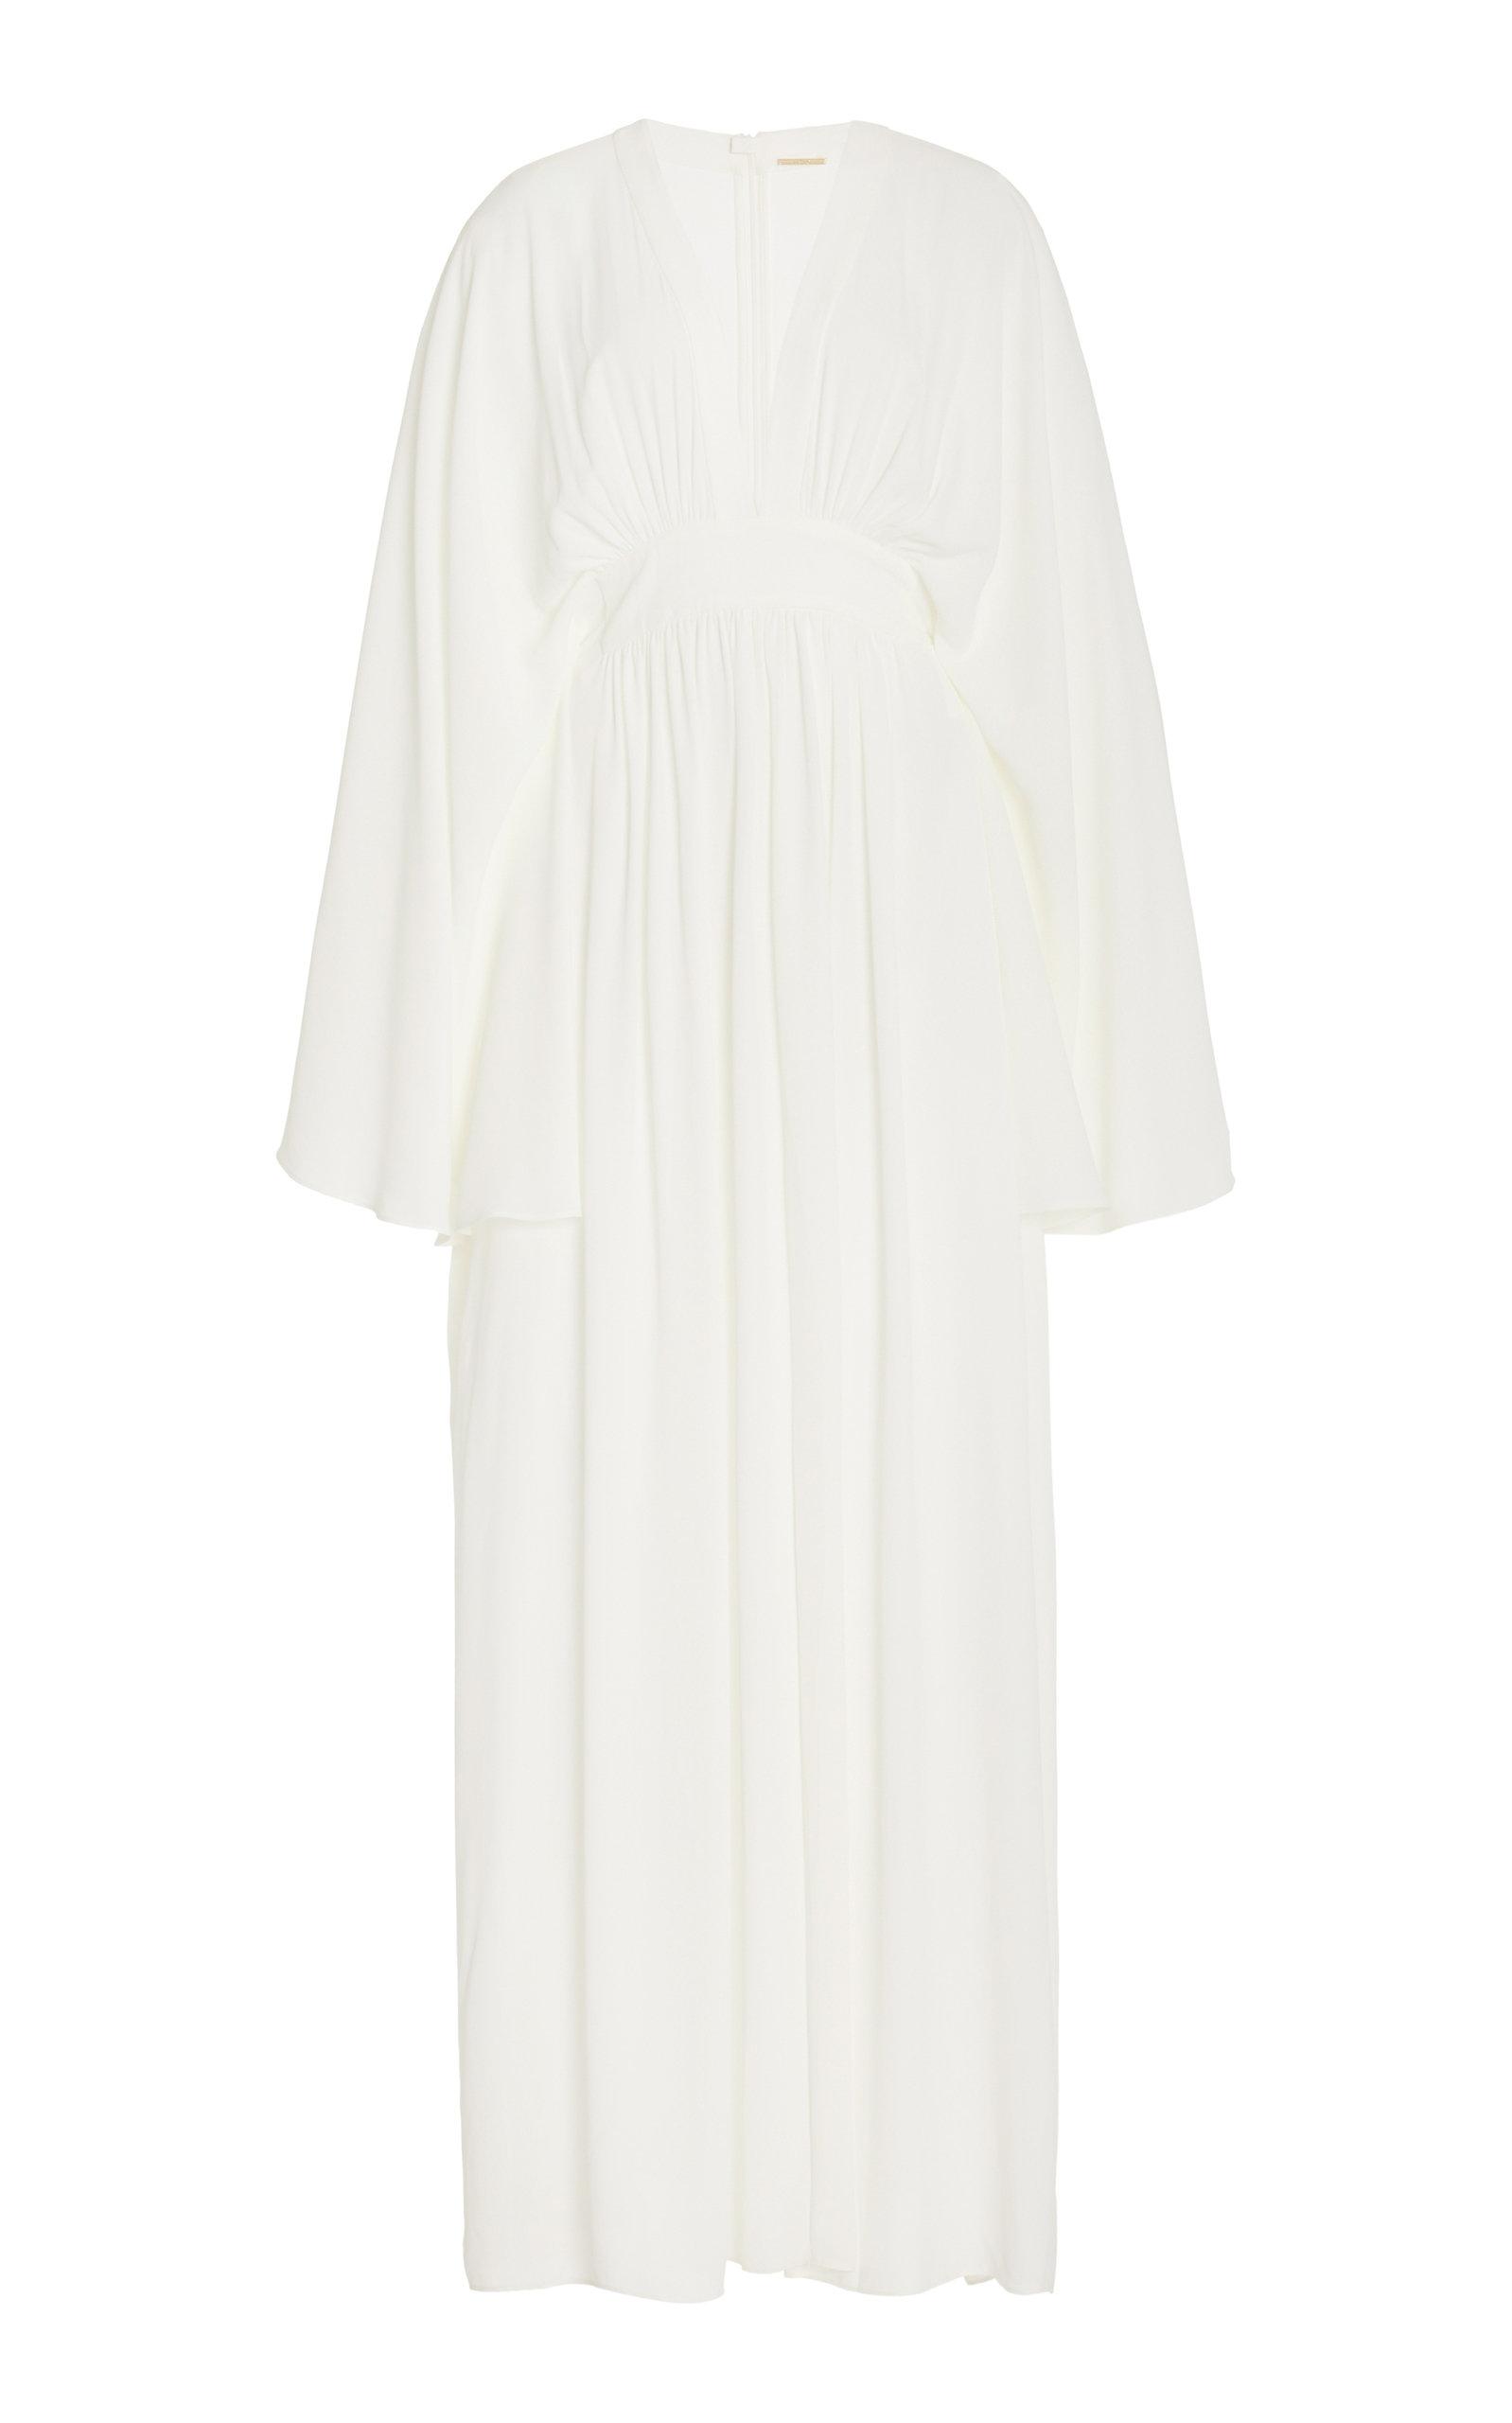 Alexis Lillia Crepe Maxi Dress in White | Lyst